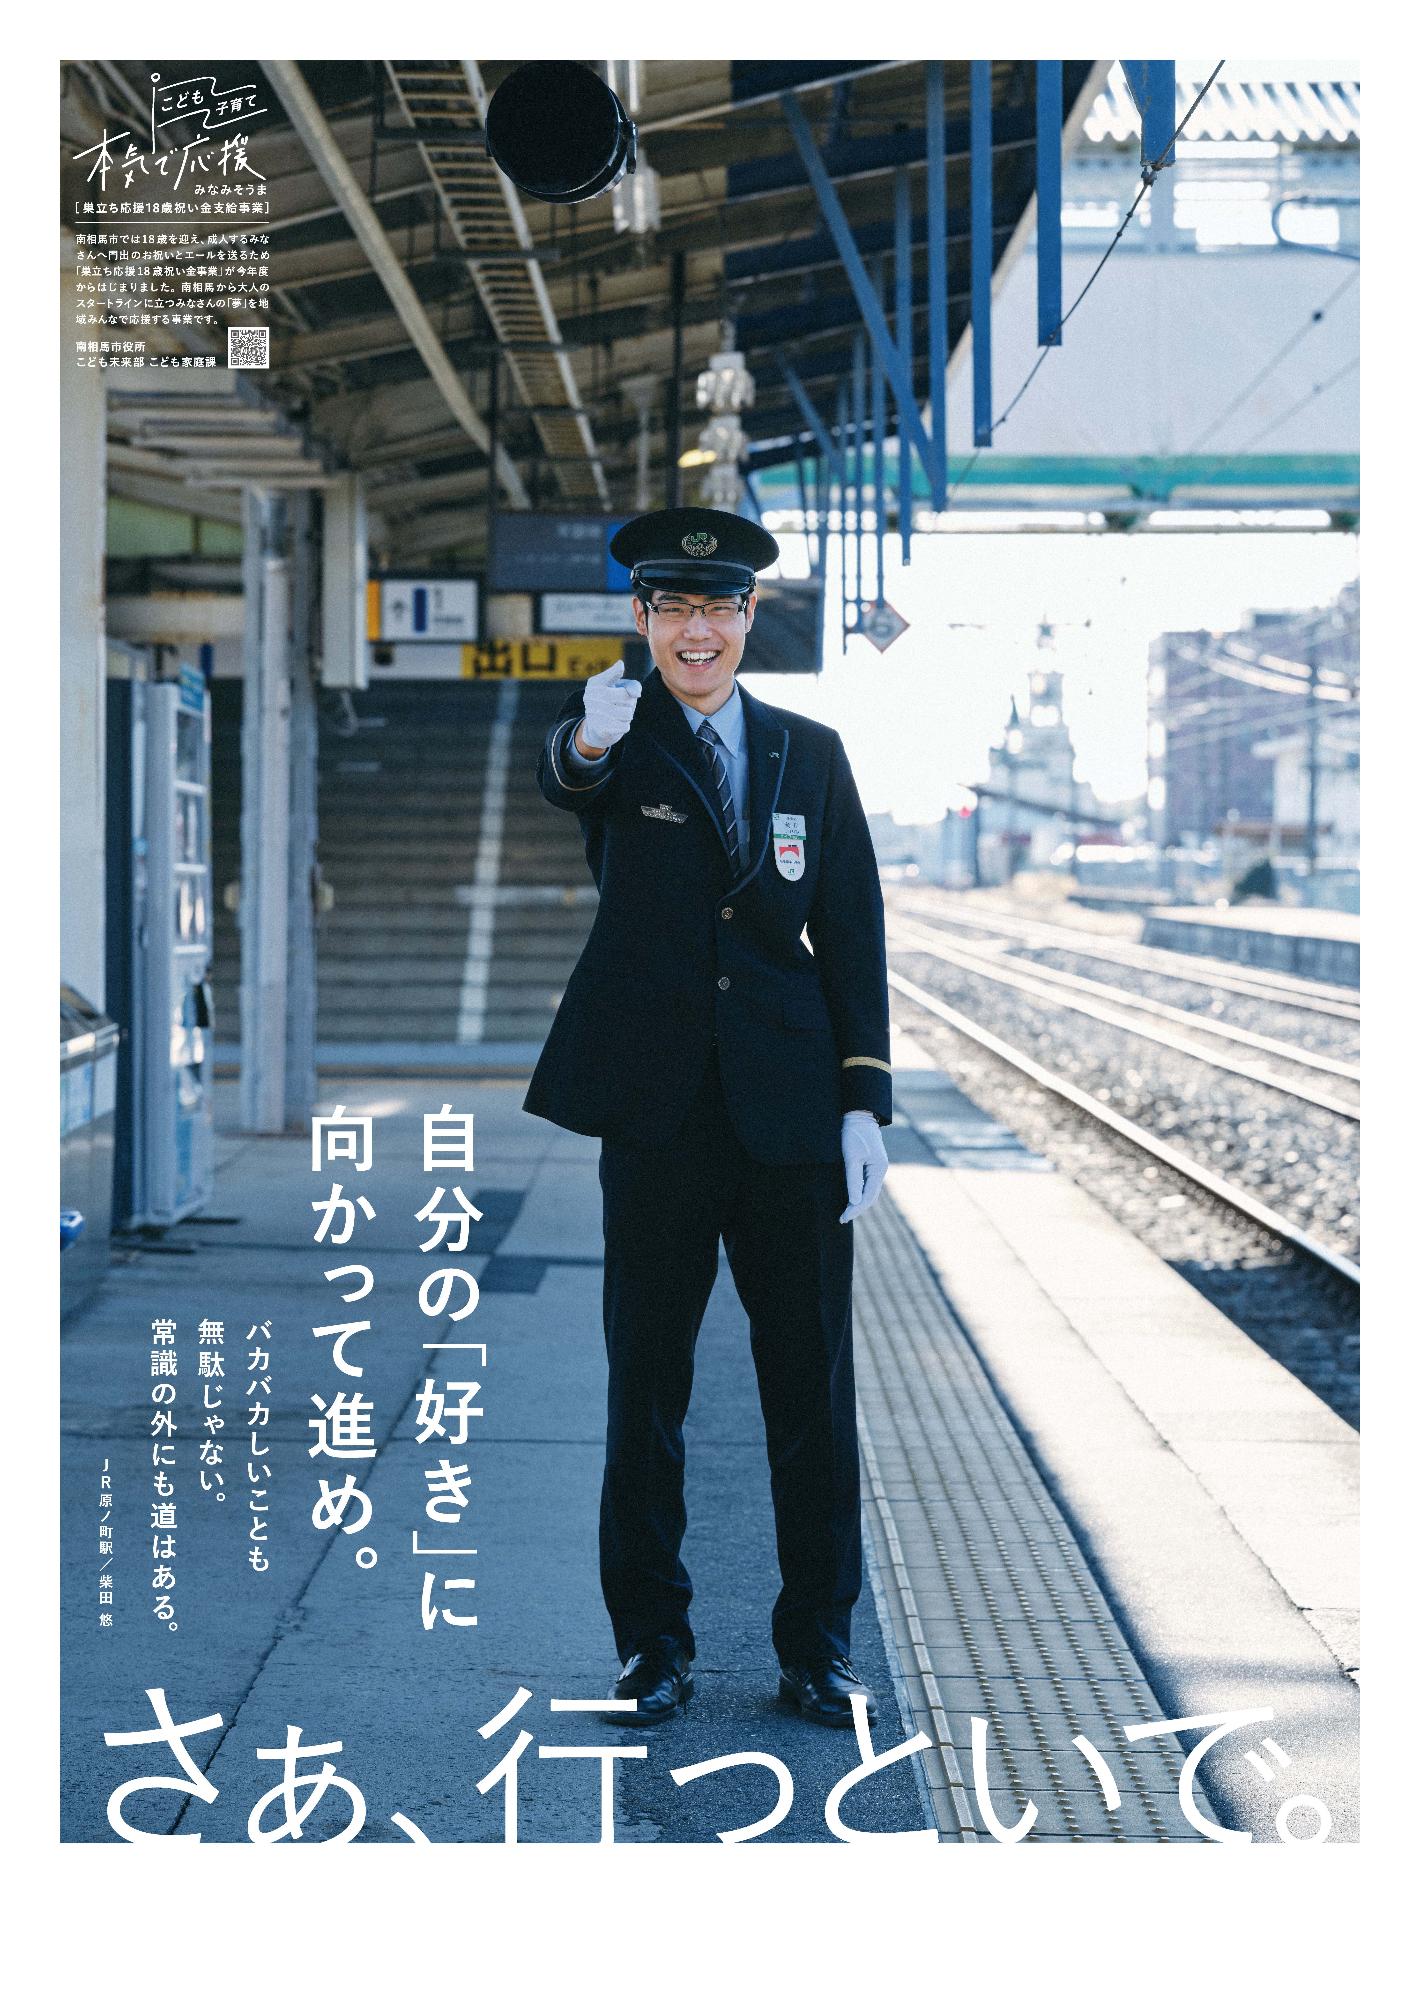 JR原ノ町駅の駅員さんが被写体のポスターです